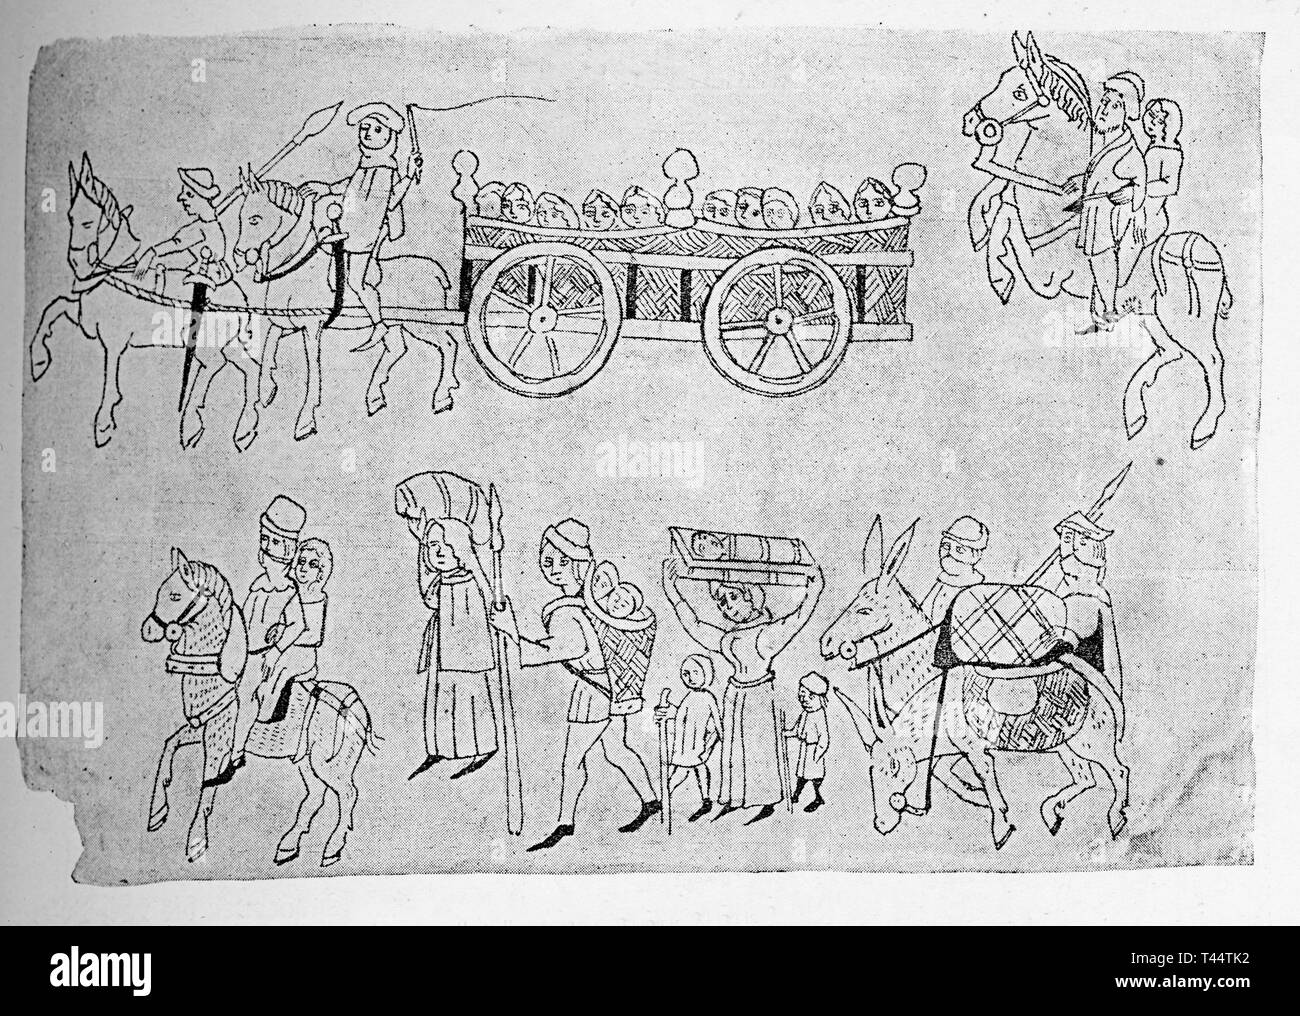 Dessin médiéval décrivant une procession de paysans voyageant sur la route à pied ou à cheval ou en calèche au marché probablement de vendre les marchandises qu'ils transportent Banque D'Images